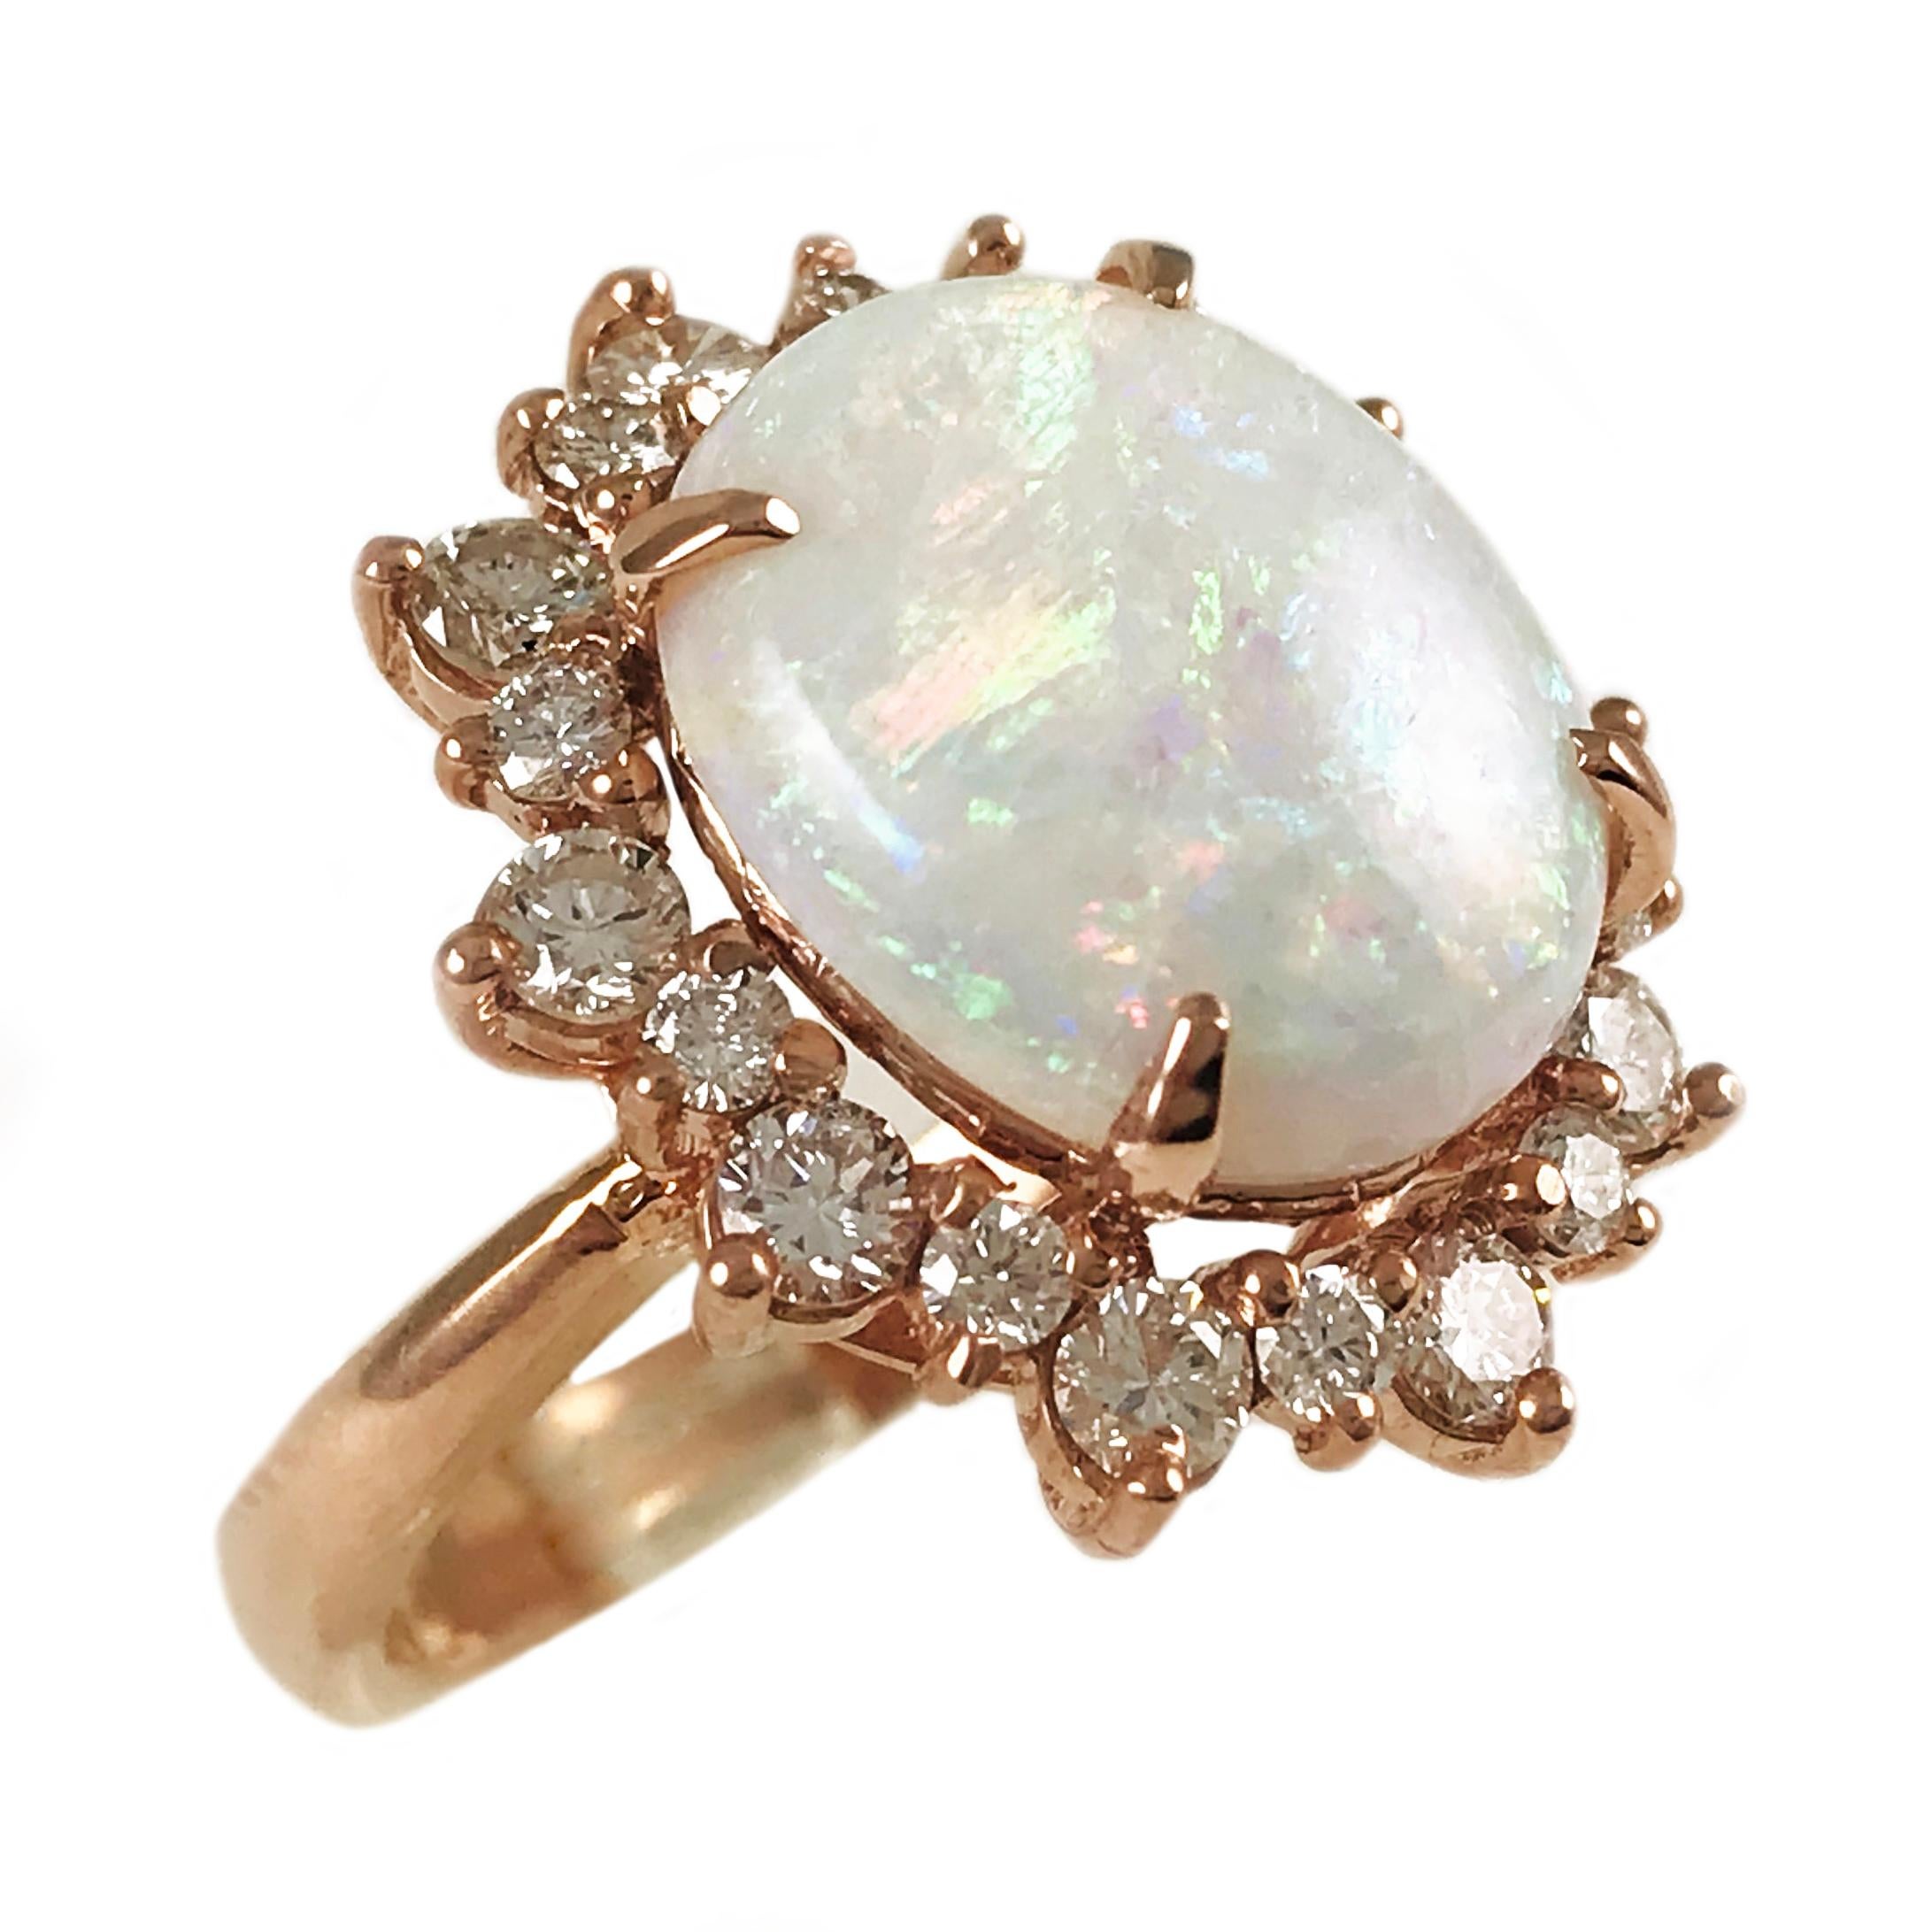 14 Karat Rose Gold natürlichen unbehandelten Opal mit Diamant Halo Ring. Der Opal ist 14 x 11,5 x 5 mm groß und hat ein Gewicht von 2,95ct. Das intensive, schöne Grün im Farbenspiel ist exquisit. Der Diamant-Halo besteht aus zwanzig Diamanten im